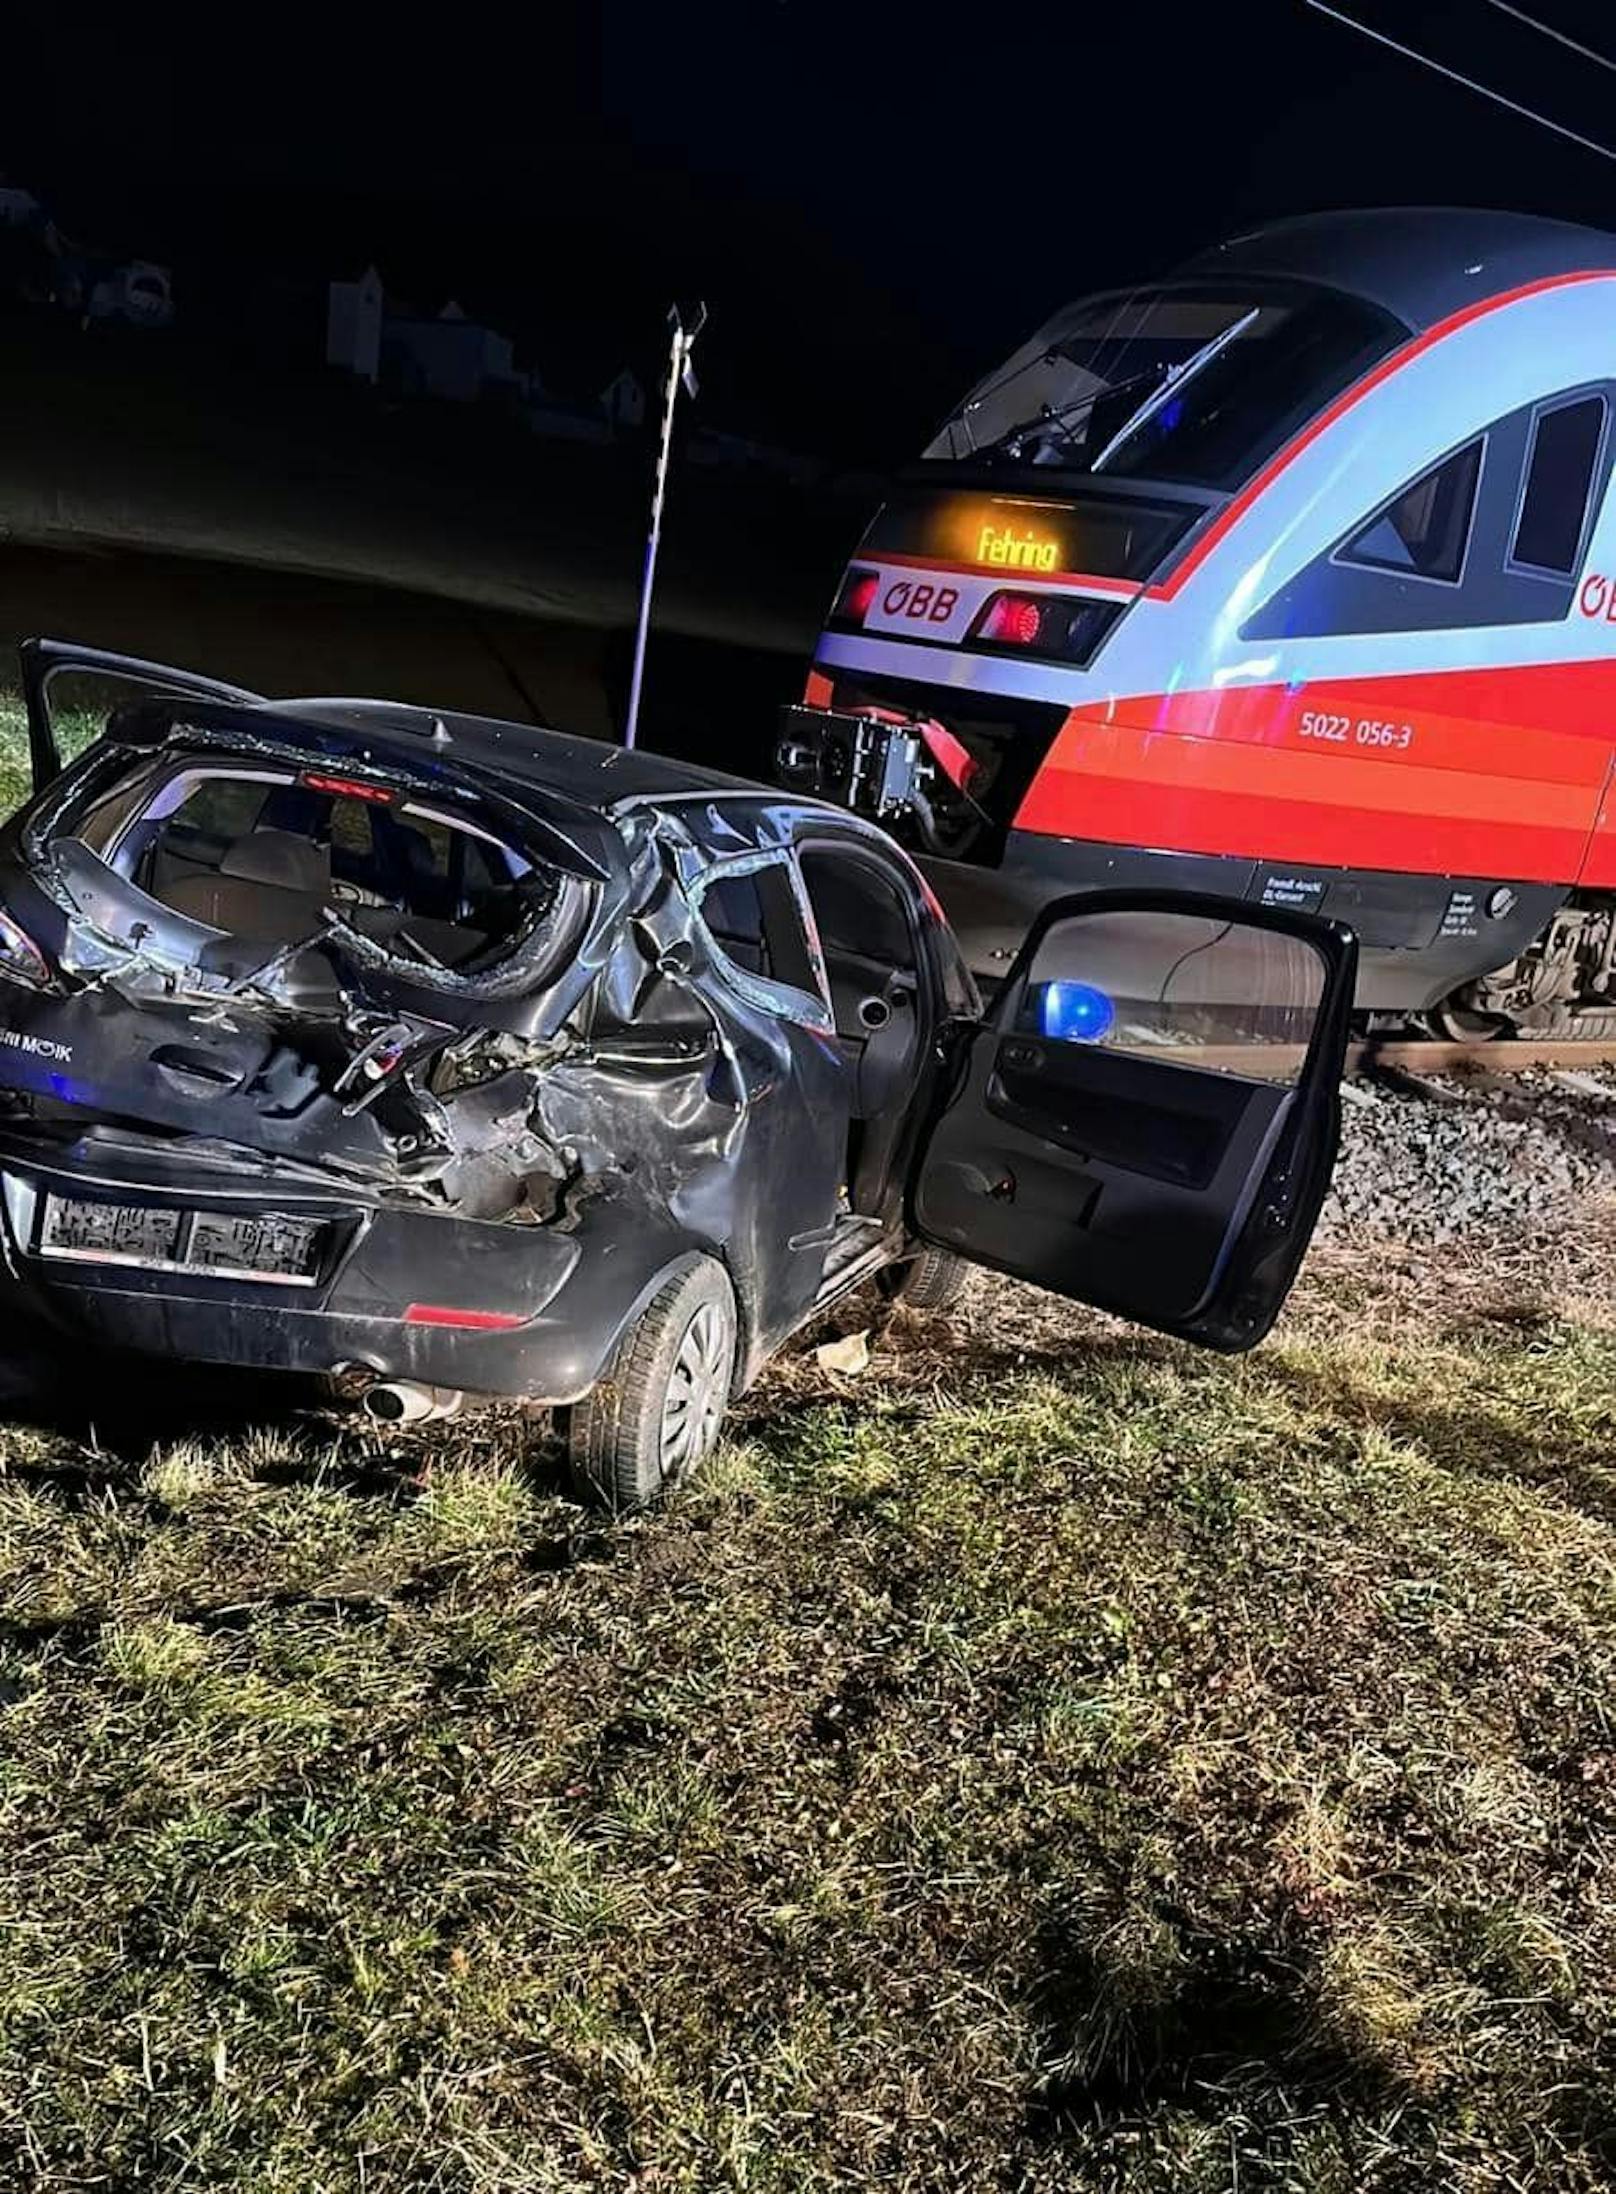 Lenker (51) übersieht Zug – vier Verletzte bei Crash